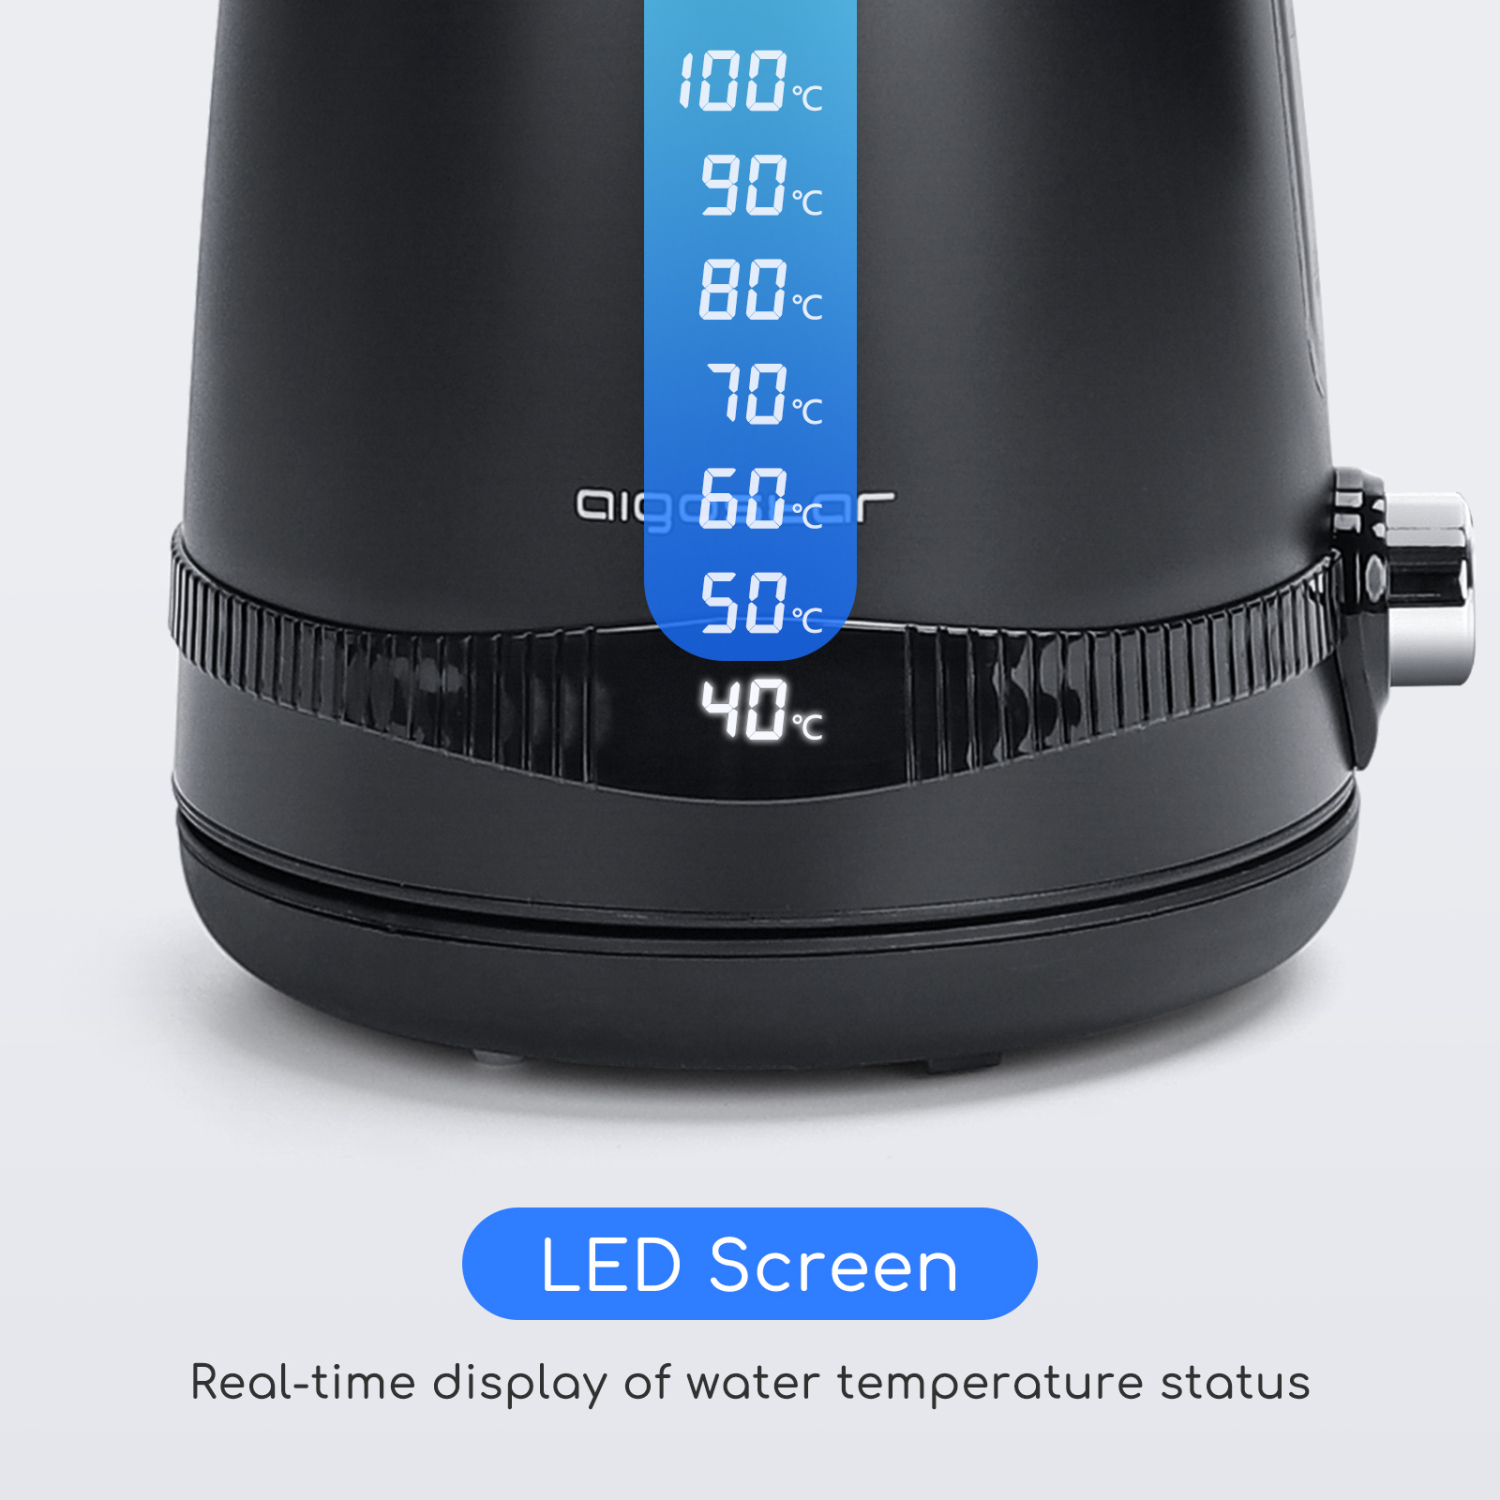 Aigostar Wasserkocher Edelstahl mit Temperatureinstellung, 1,7l, 2200W, Besonders Leise Digitale Wasserkocher Temperaturwahl 40-100 Grad, LCD Anzeige, Teekocher mit Warmhaltefunktion BPA Frei Schwarz